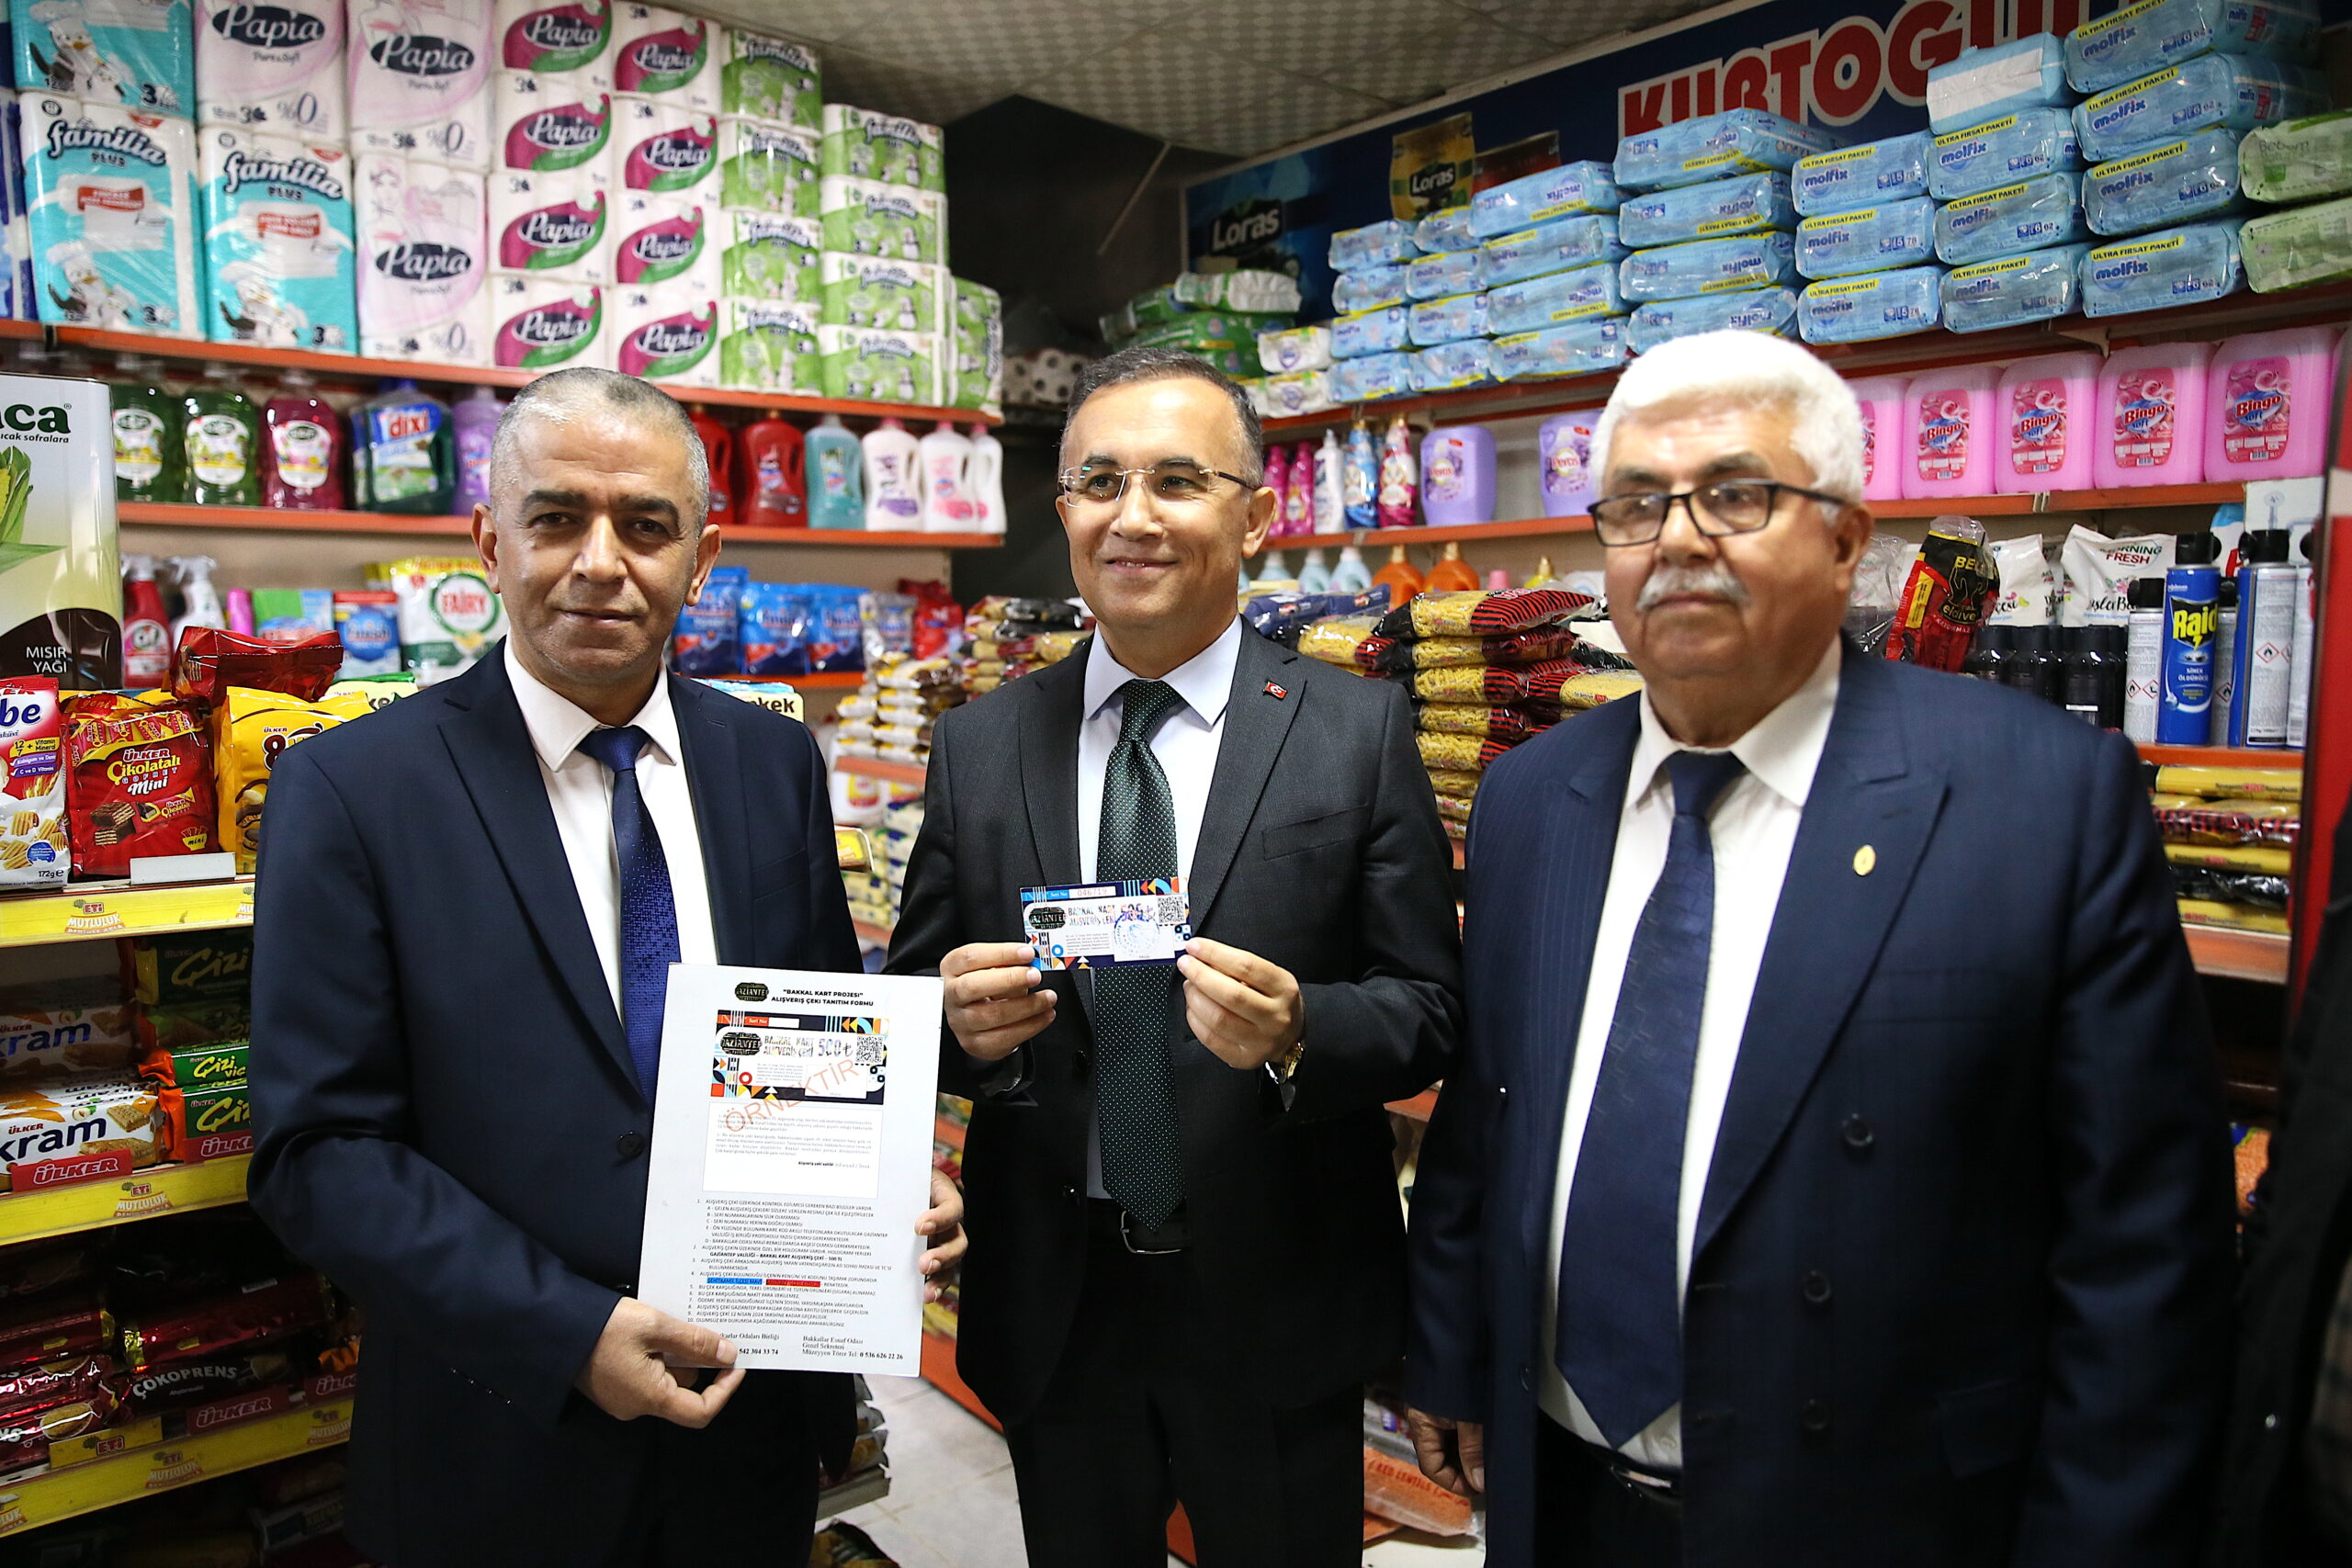 Gaziantep’te aileler “Bakkal Kart”la ilk alışverişlerini yaptı